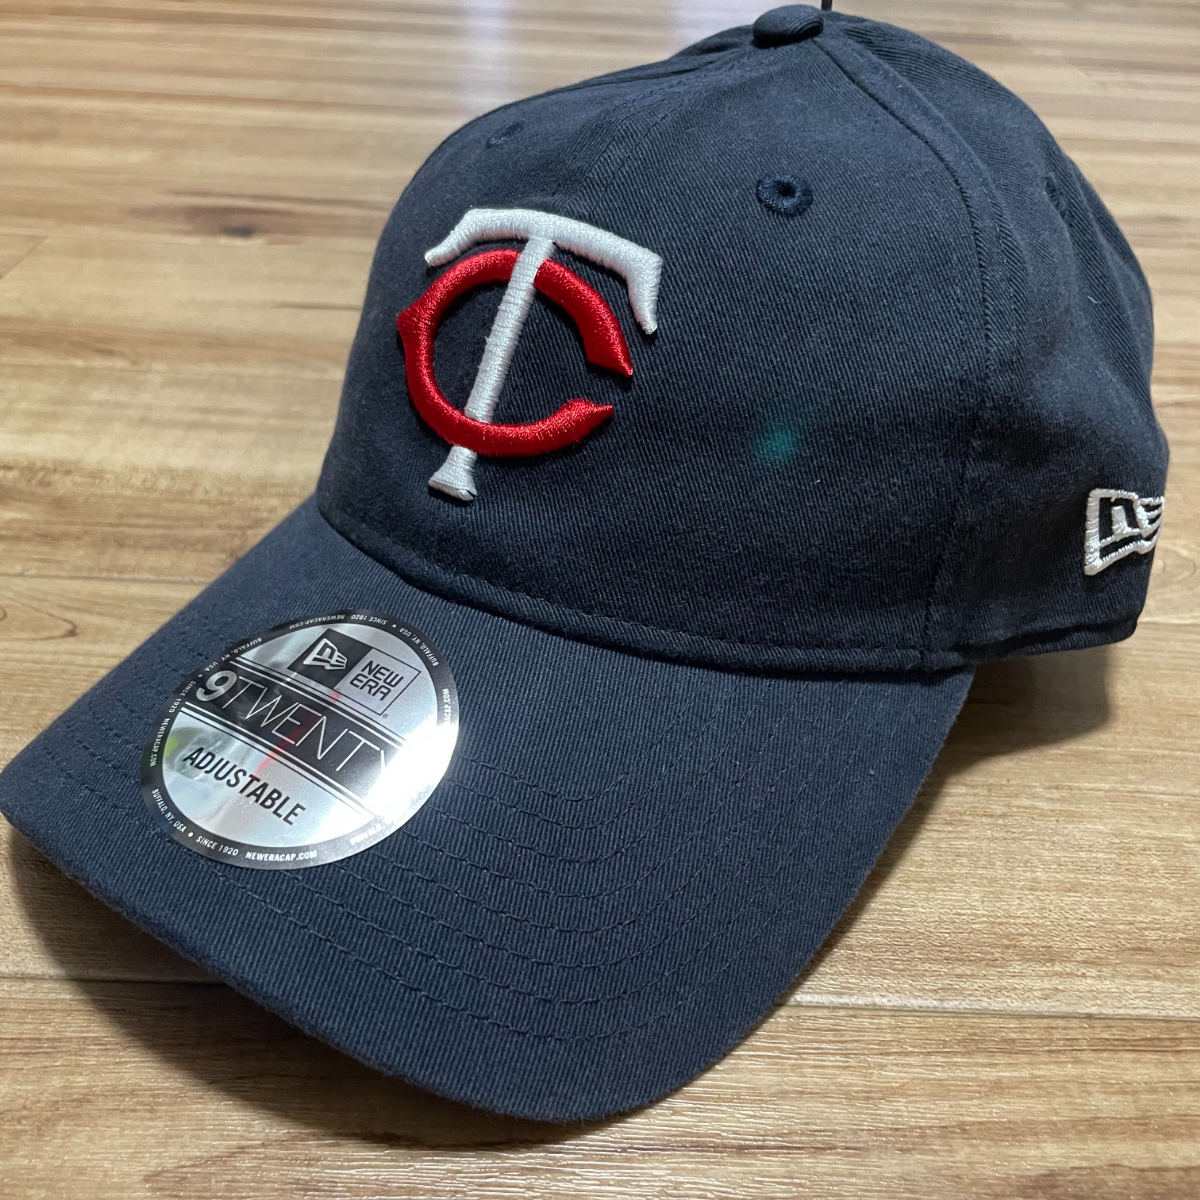 NEWERA 【9Twenty】 ニューエラ ストラップバックキャップ 帽子 MLB ミネソタ ツインズ Twins サイズ調節可能 USA正規品 ネイビー 紺 Home